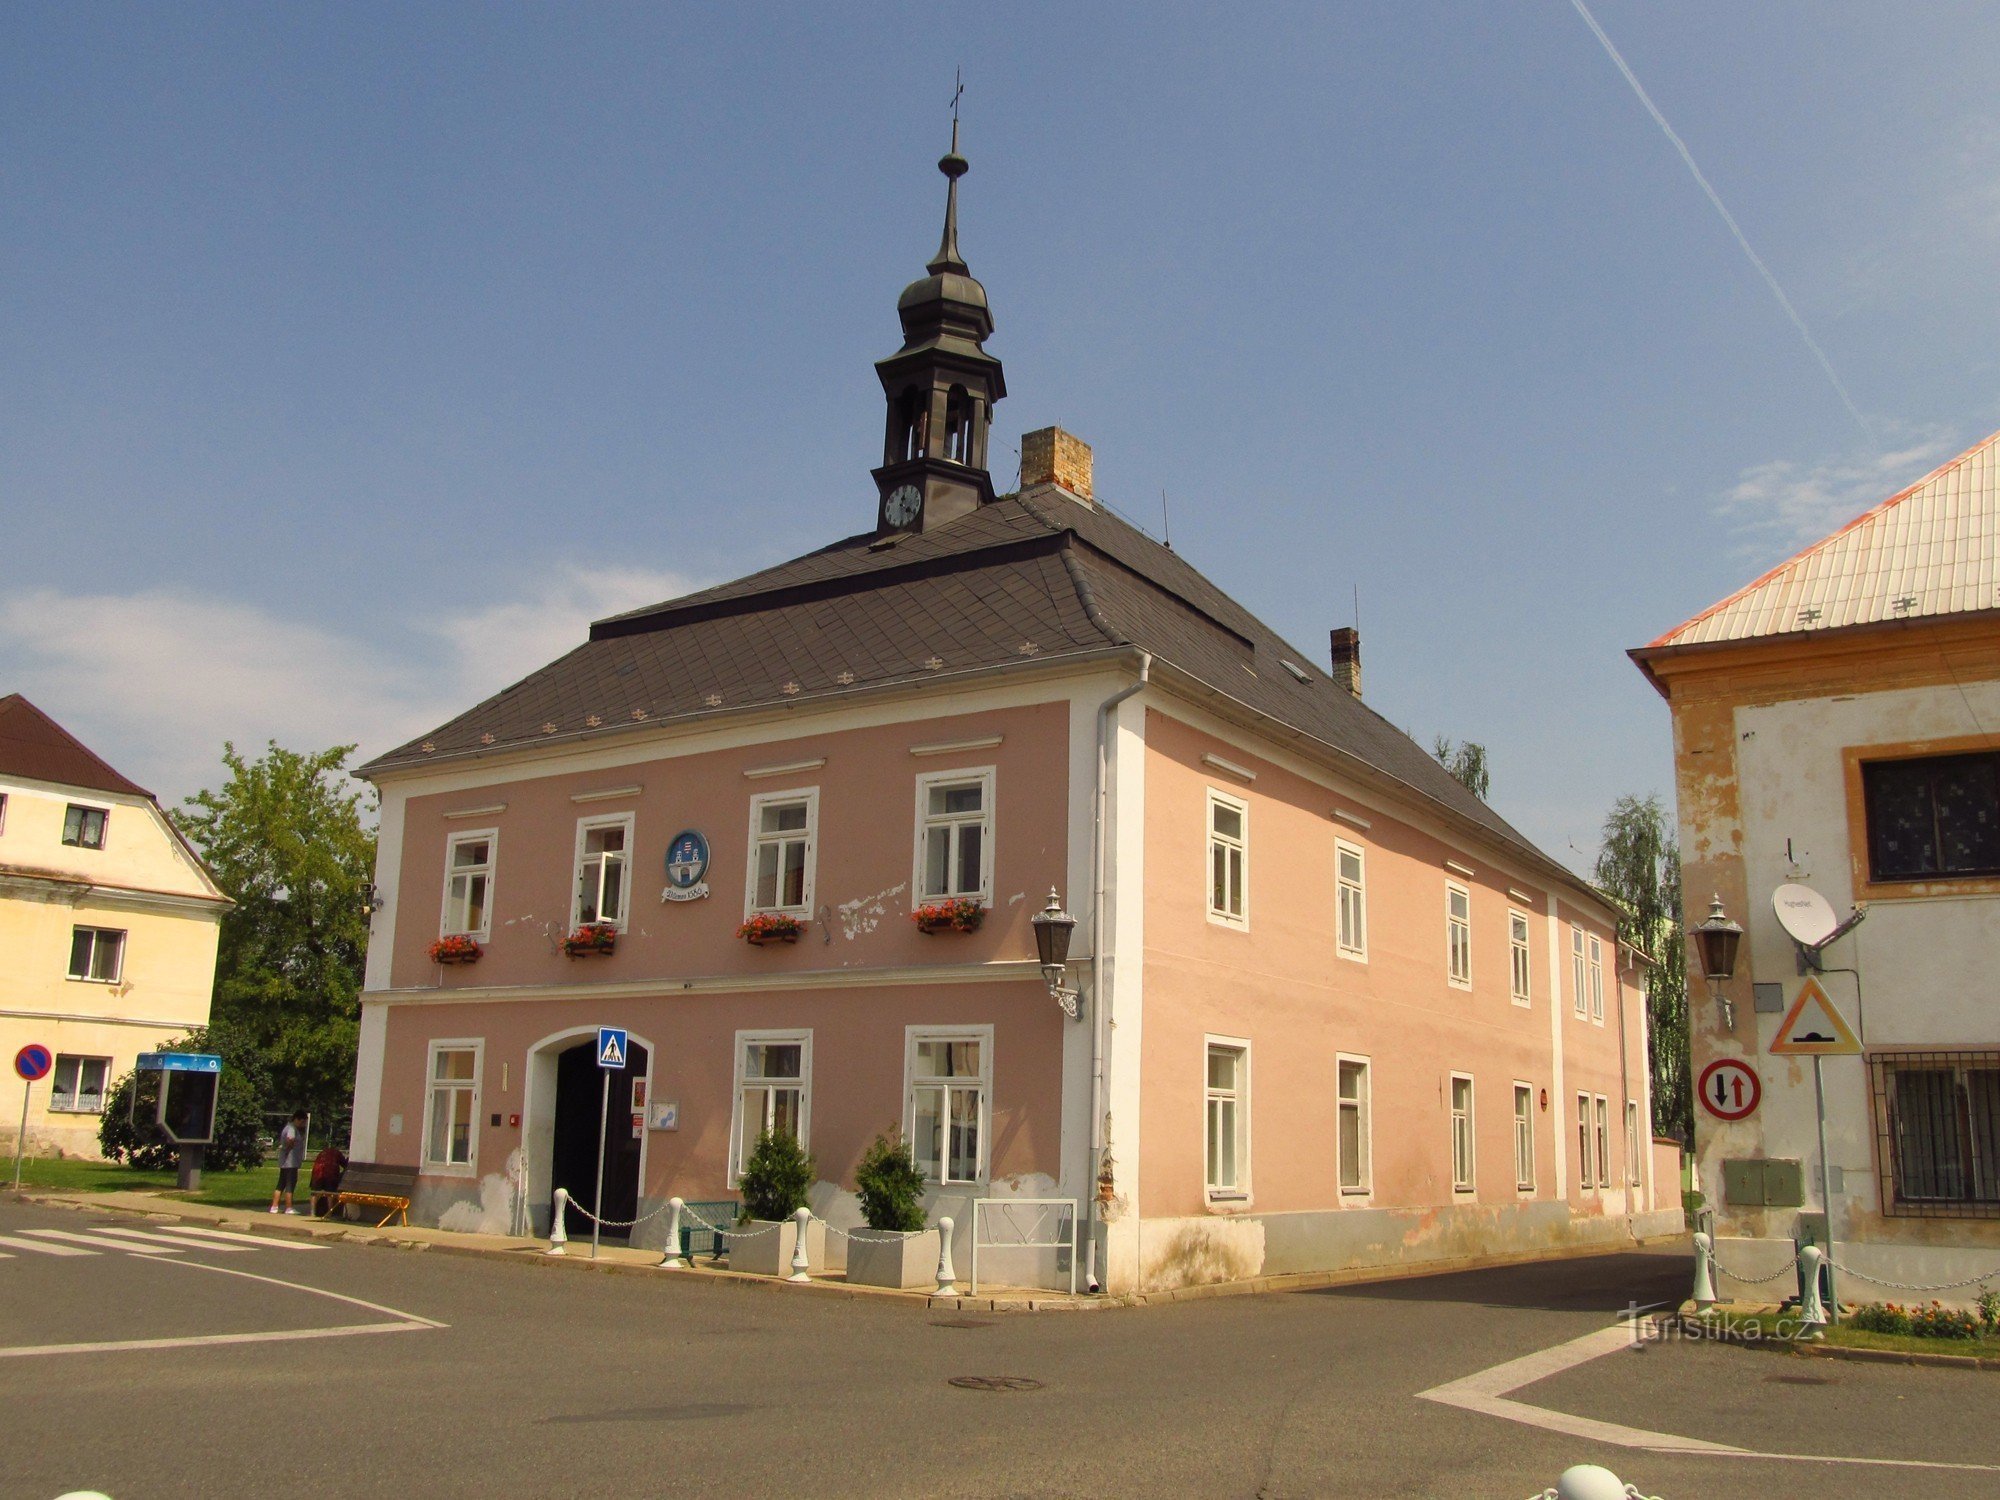 Hôtel de ville de Vilémov de la fin du XVIIIe siècle avec une tourelle et des armoiries sur la façade